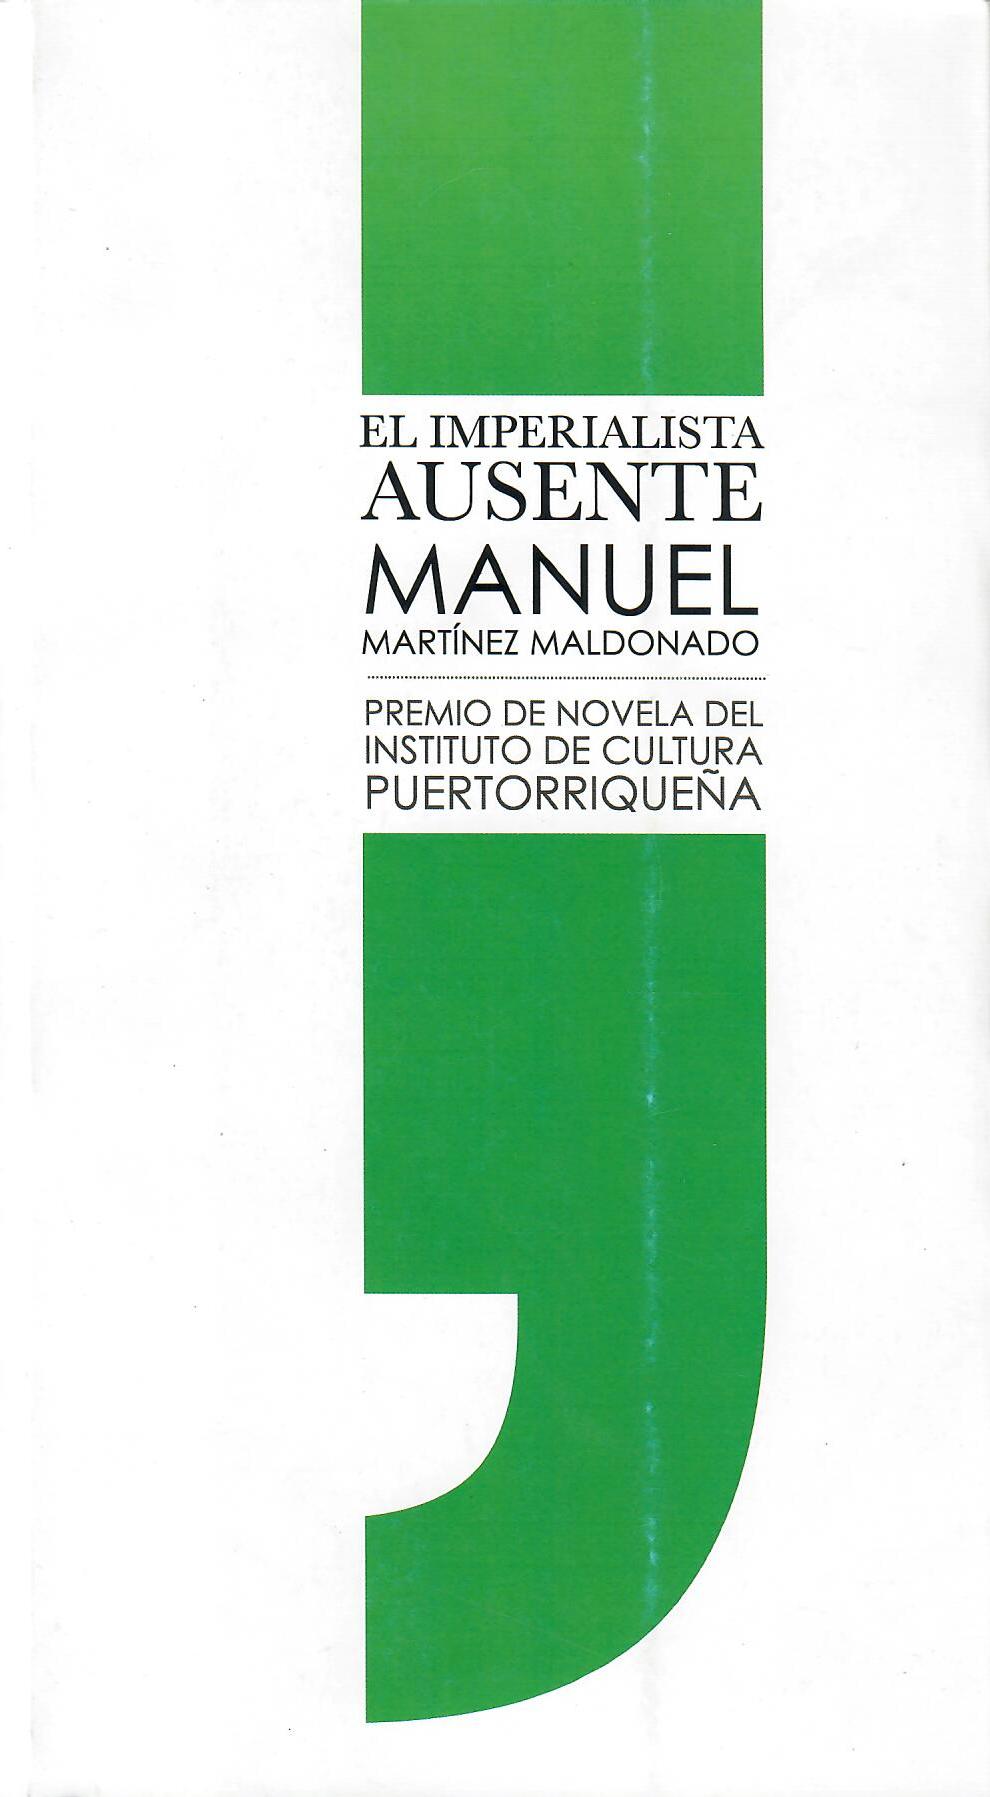 EL IMPERIALISTA AUSENTE - Manuel Martínez Maldonado